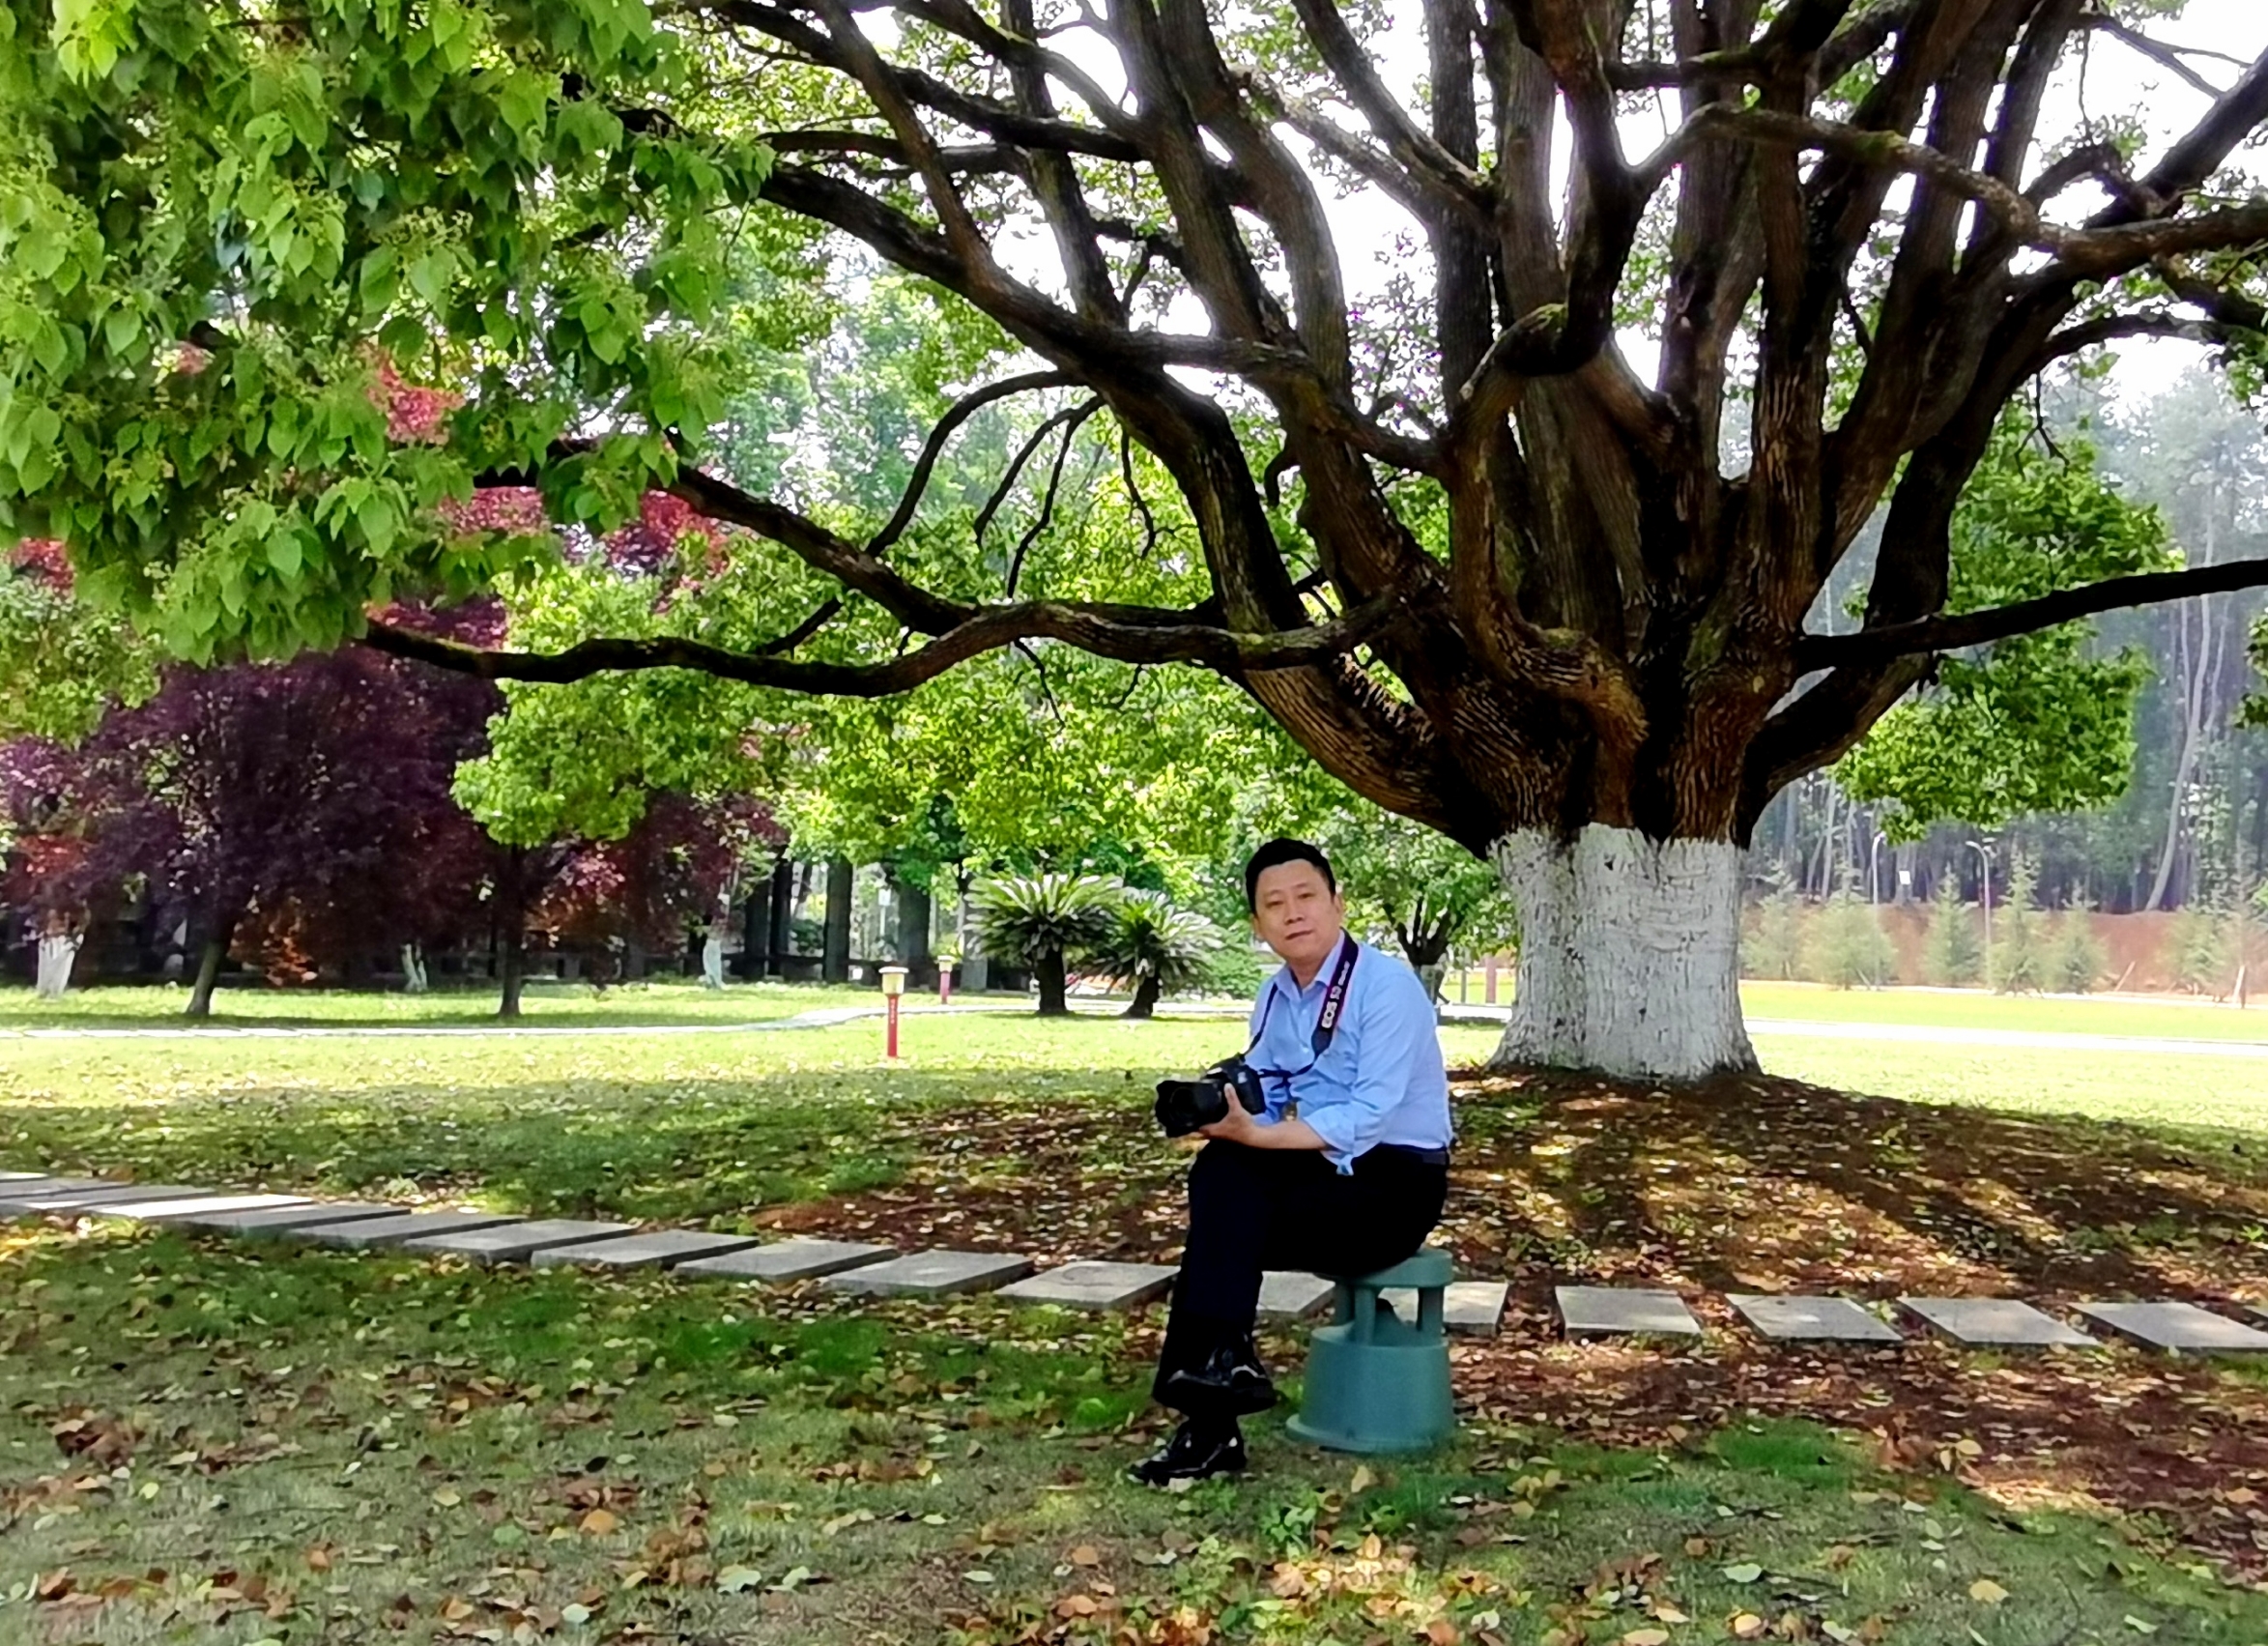 常言道：“大树底下好乘凉。”今天中午，独自坐在这棵香樟树下，发现真的很凉爽。